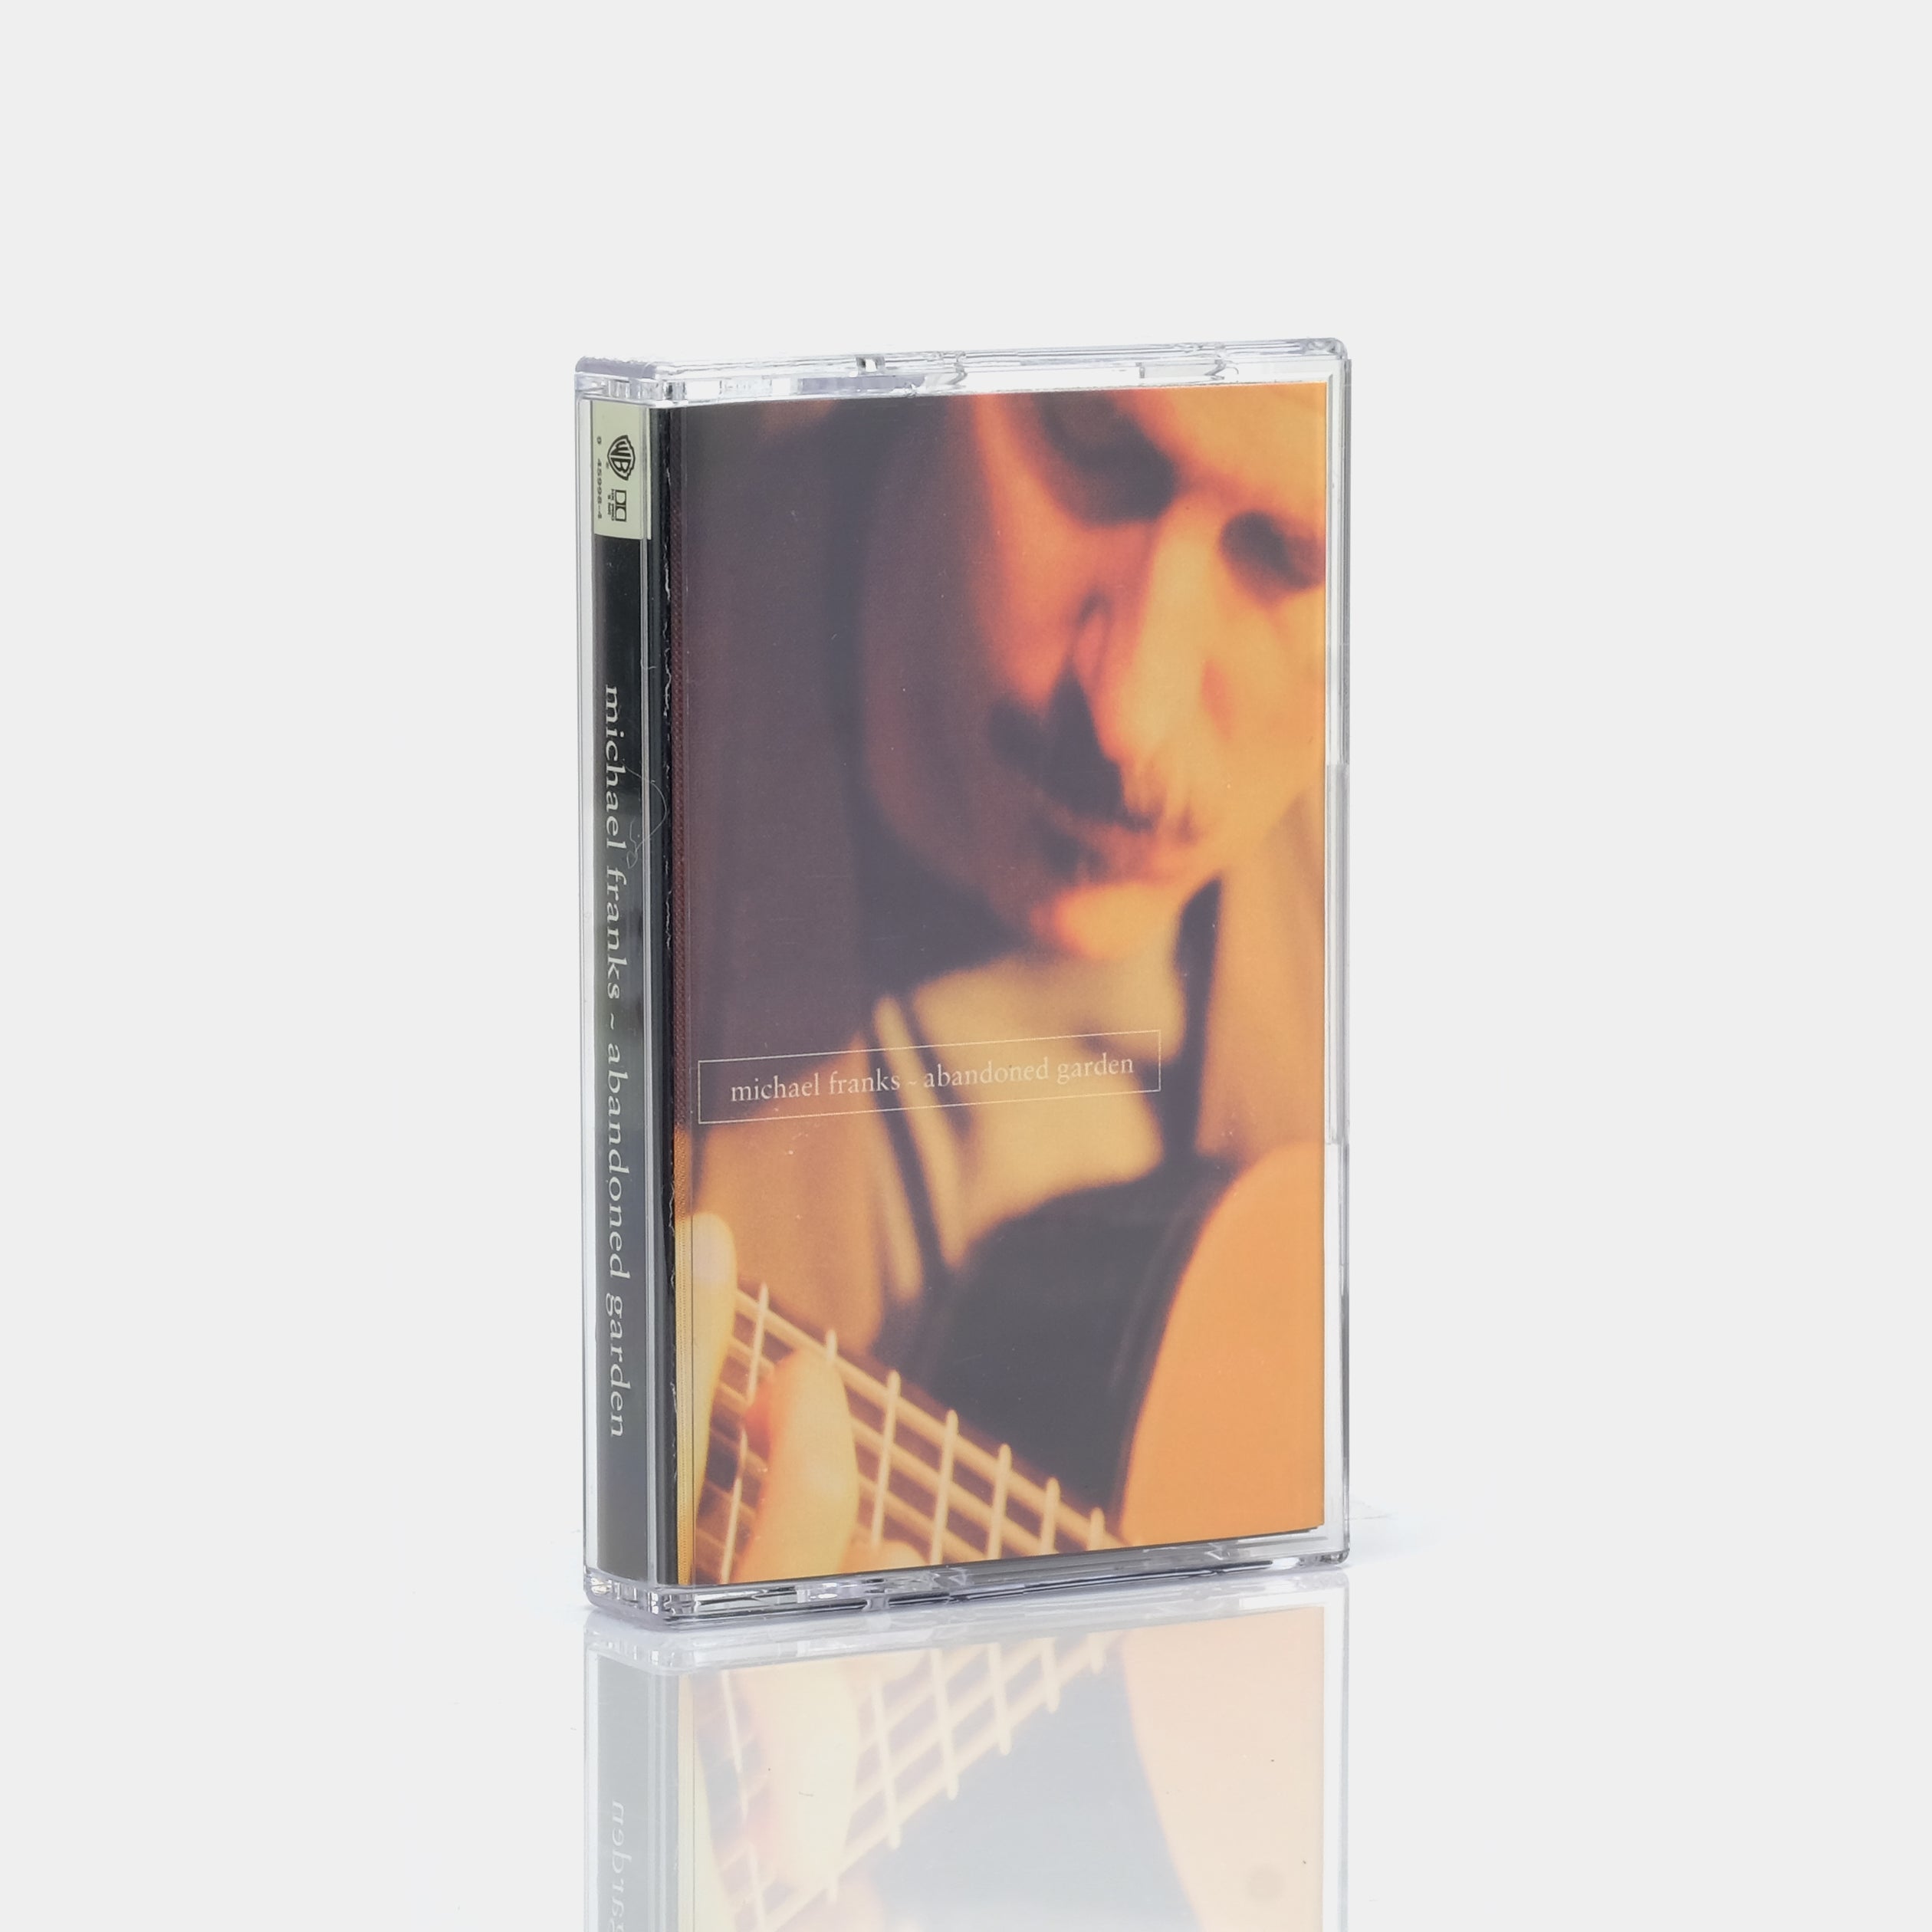 Michael Franks - Abandoned Garden Cassette Tape